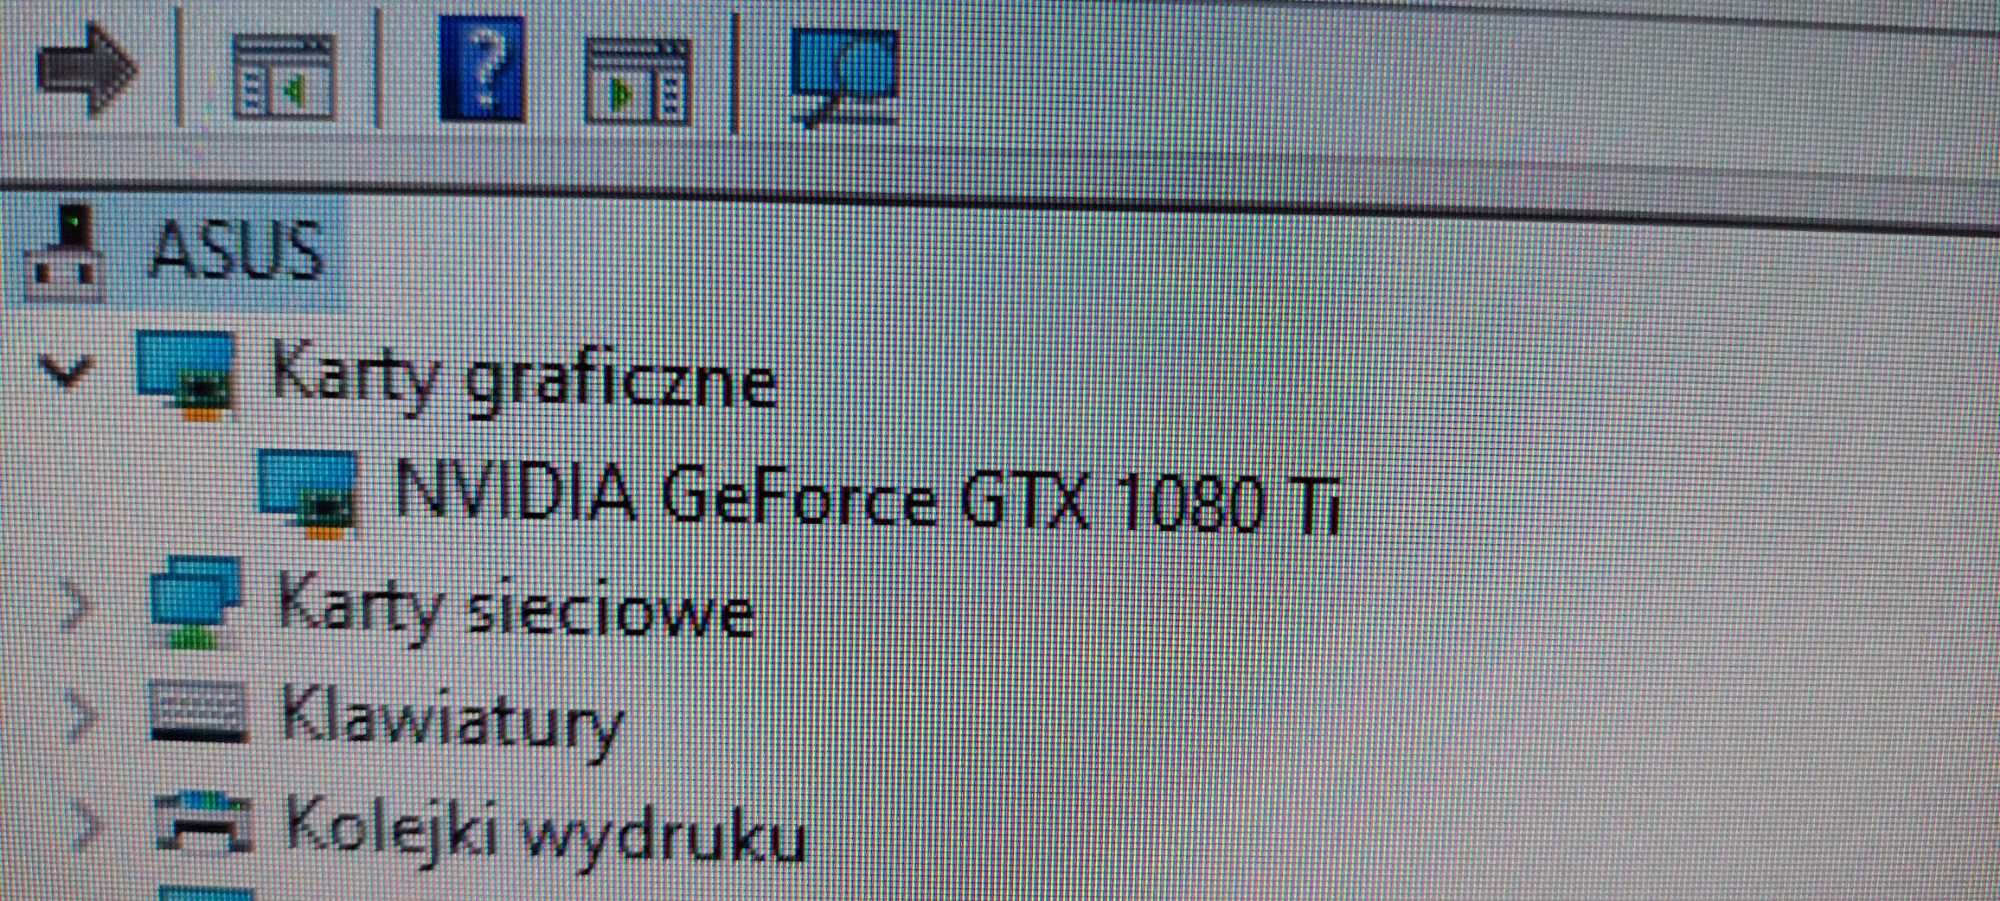 Komputer PC z kartą graficzną Geforce GTX 1080 Ti